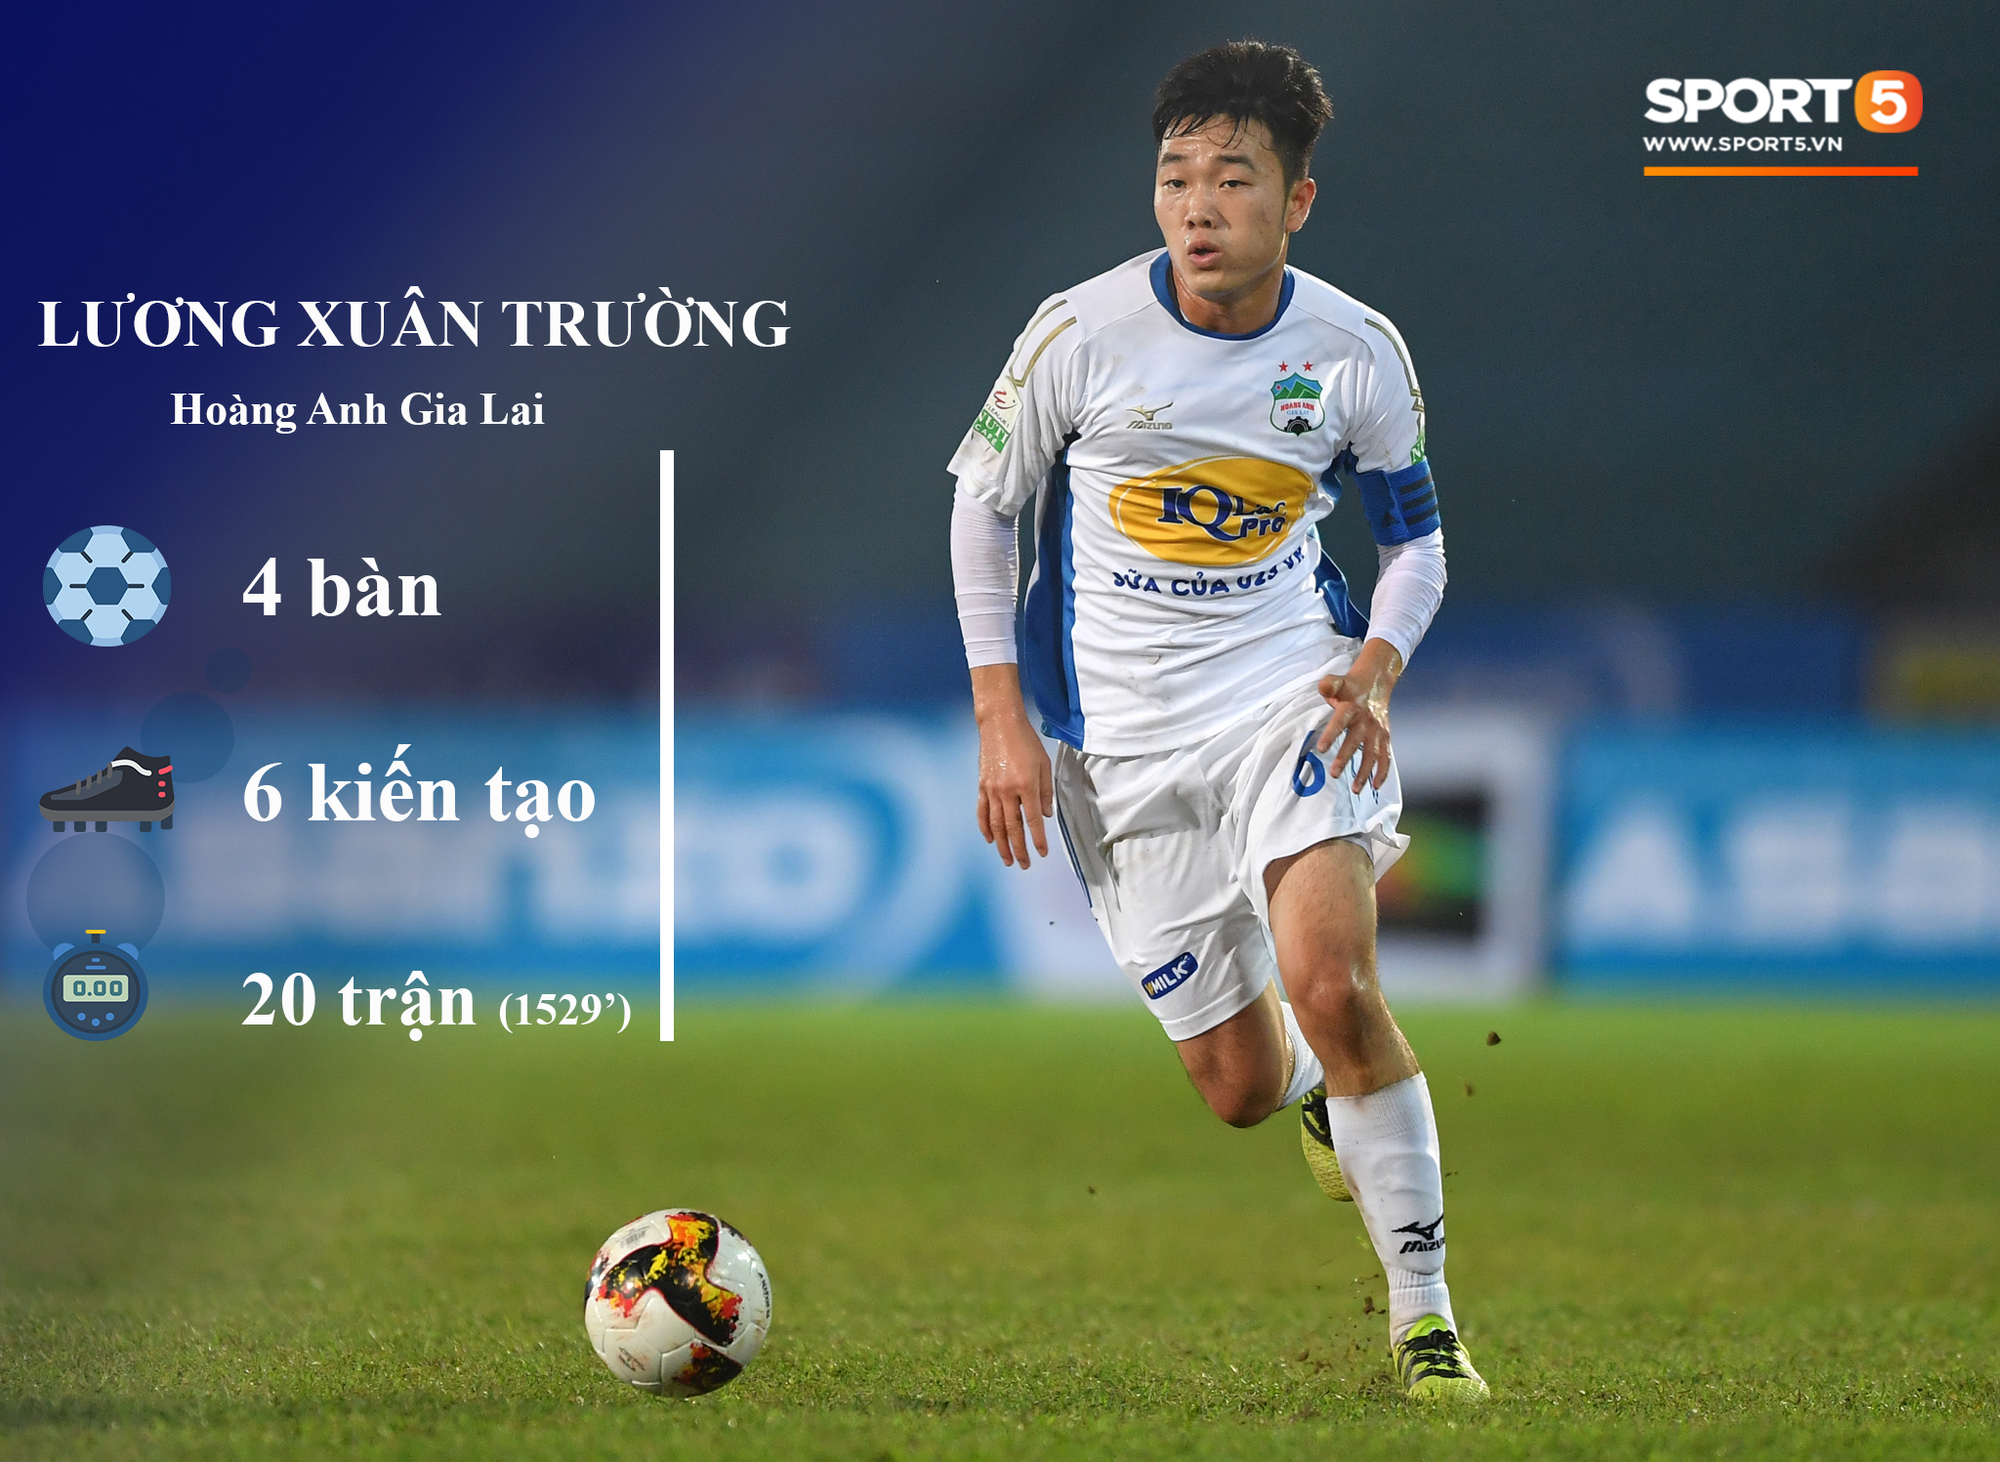 Những thống kê đáng chú ý của cầu thủ U23 Việt Nam (P1) - Ảnh 3.